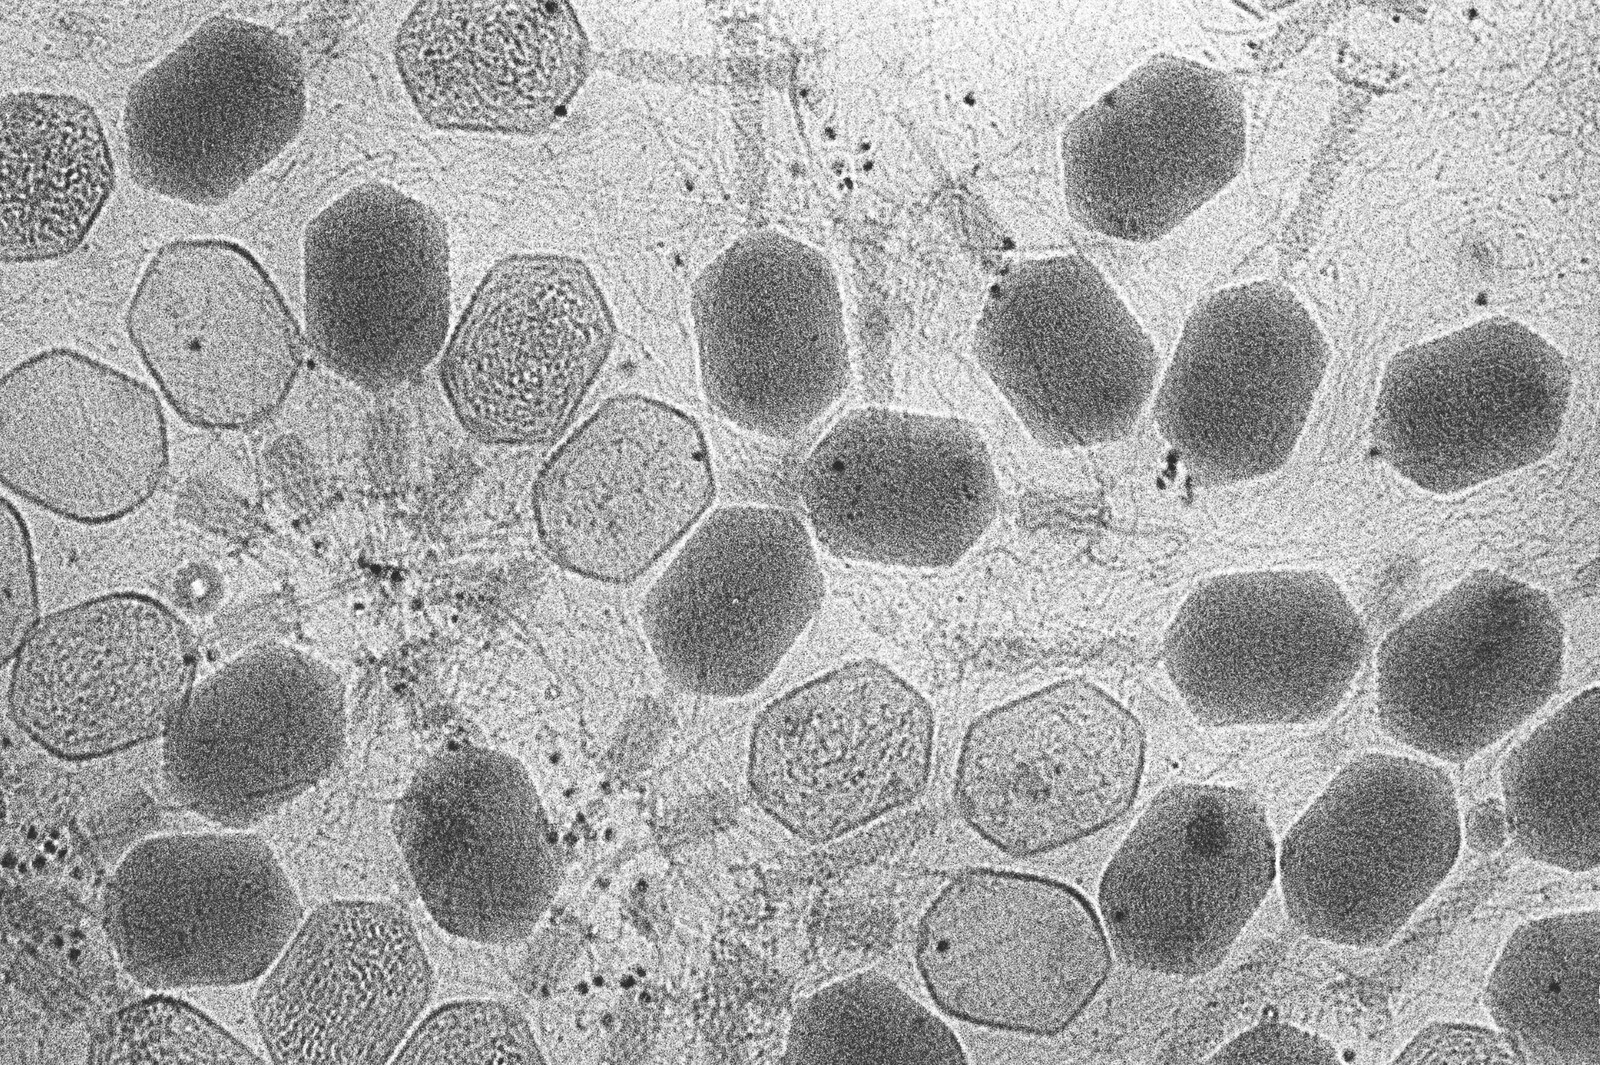 bacteria cells